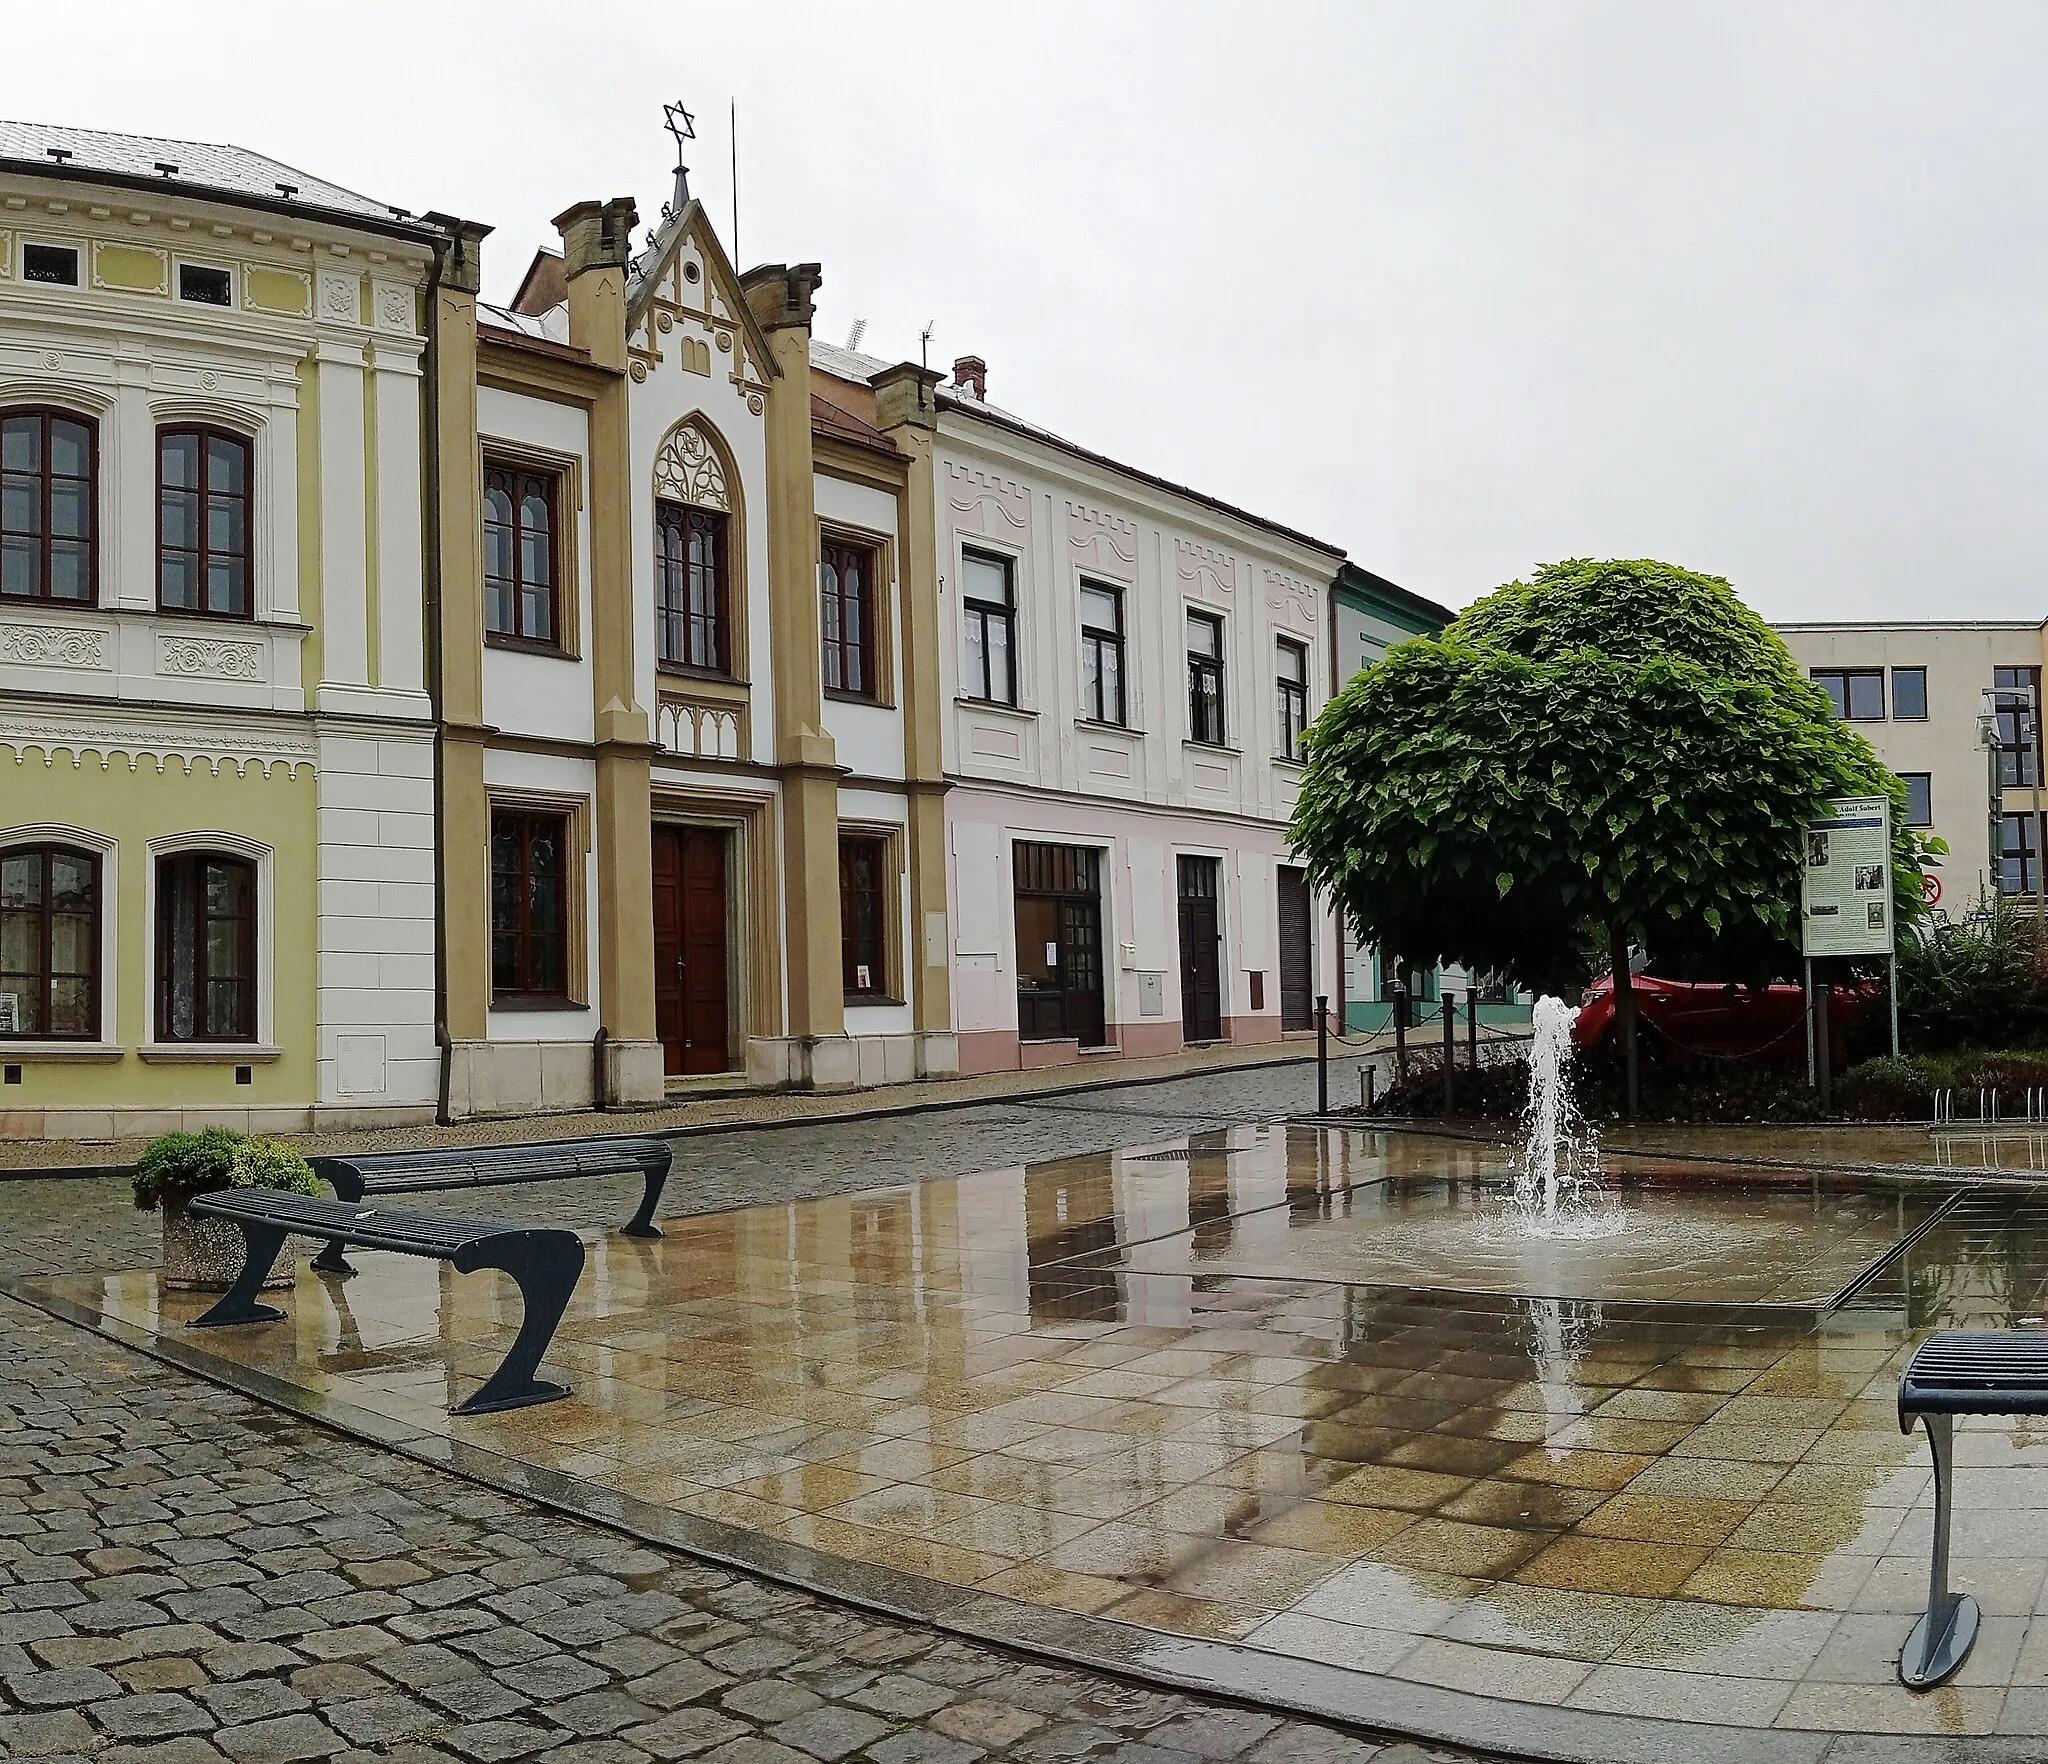 Photo showing: Šubertovo náměstí, a square in Dobruška, Hradec Králové Region, Czechia